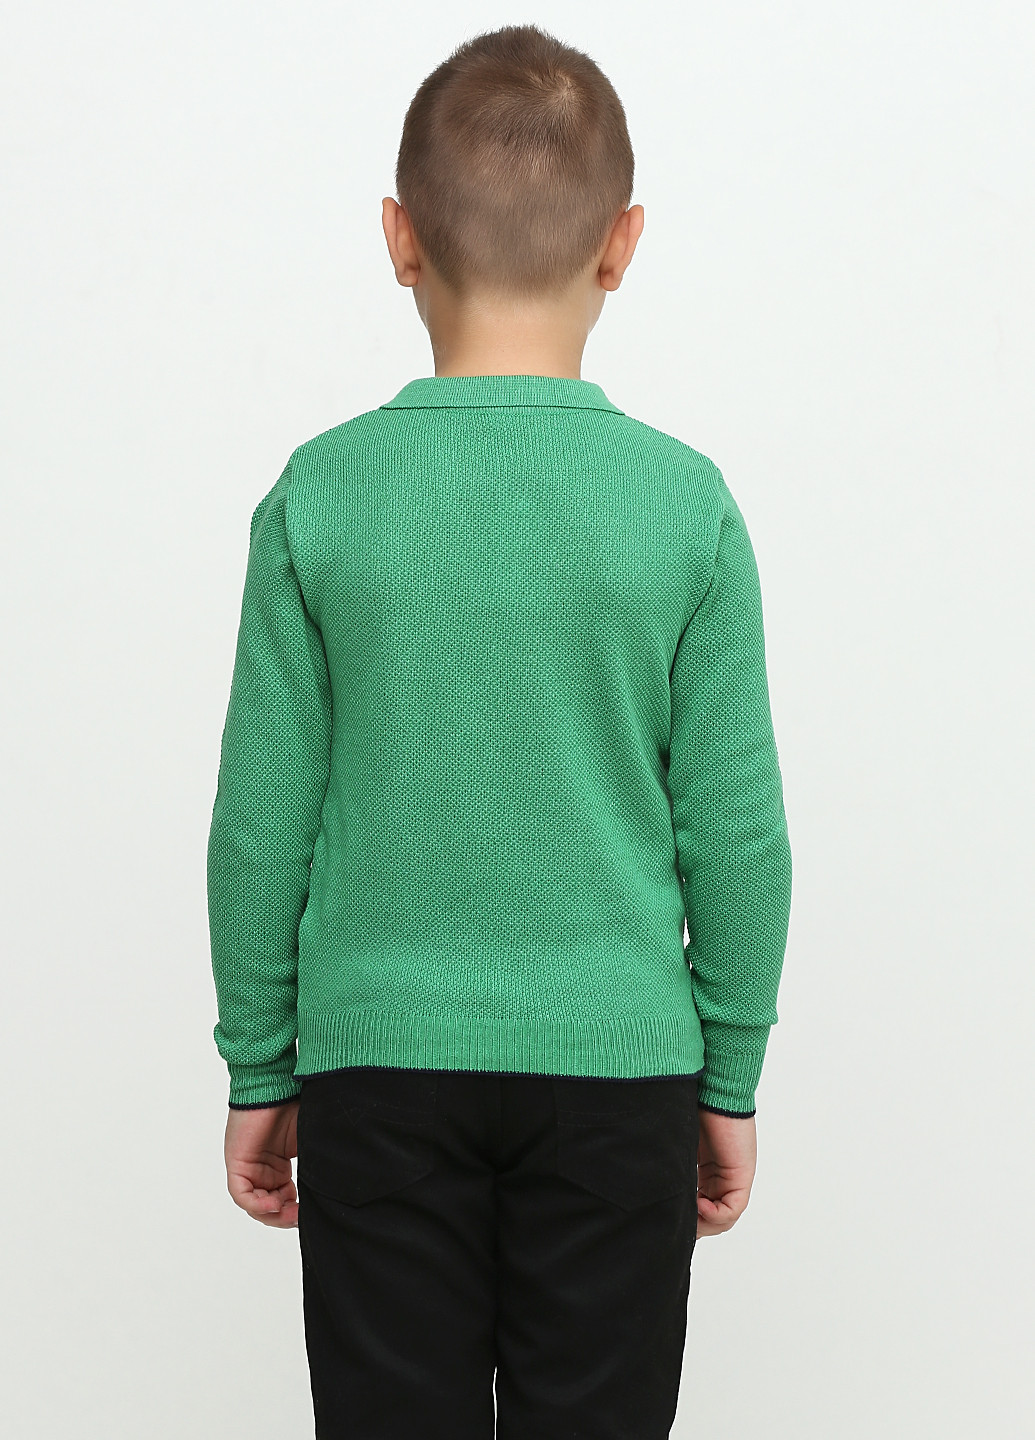 Зеленая детская футболка-поло для мальчика Top Hat Kids однотонная